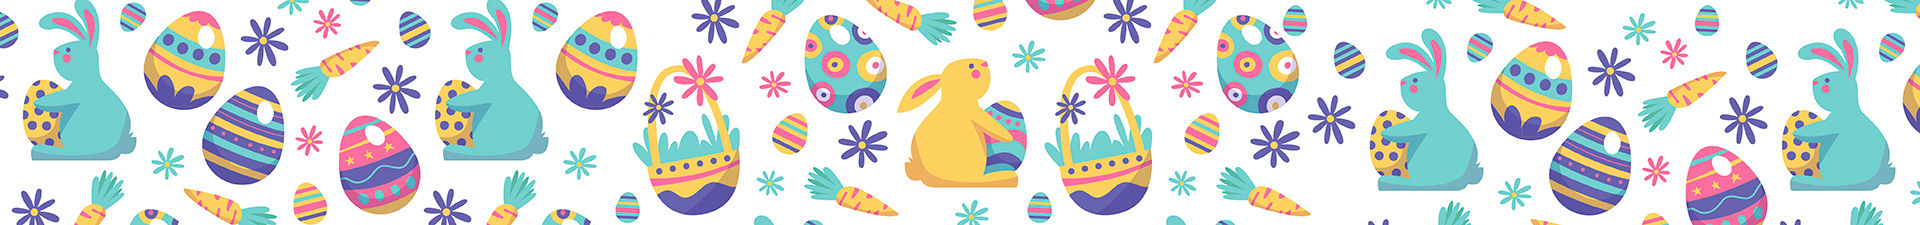 Pascua: huevos decorativos y adornos.